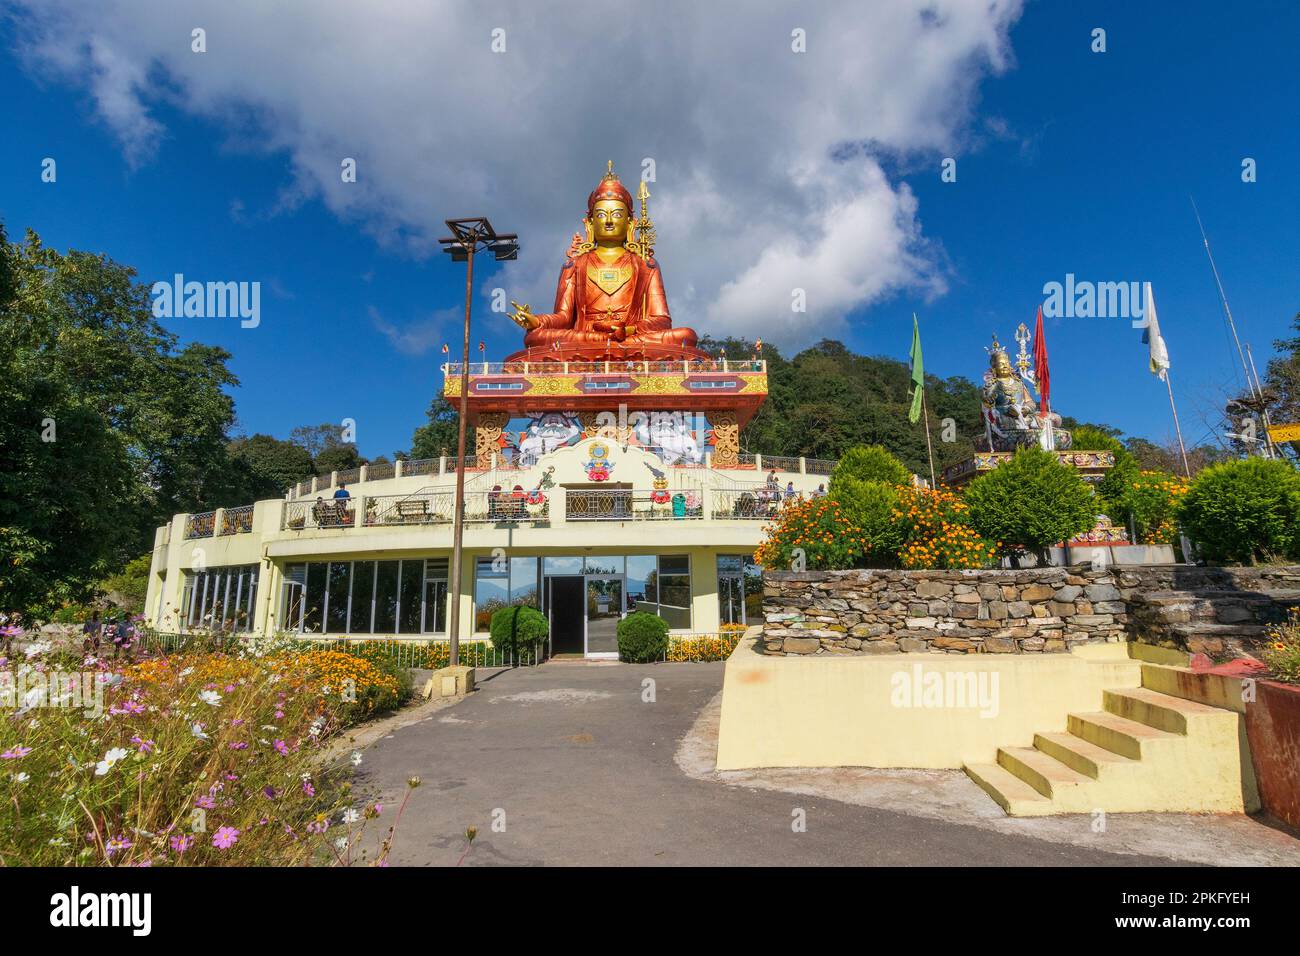 Vue panoramique de la statue sainte de Guru Padmasambhava ou née d'un lotus, Guru Rinpoché, ciel bleu et nuages blancs, Samdruptse, Sikkim, Inde. Banque D'Images